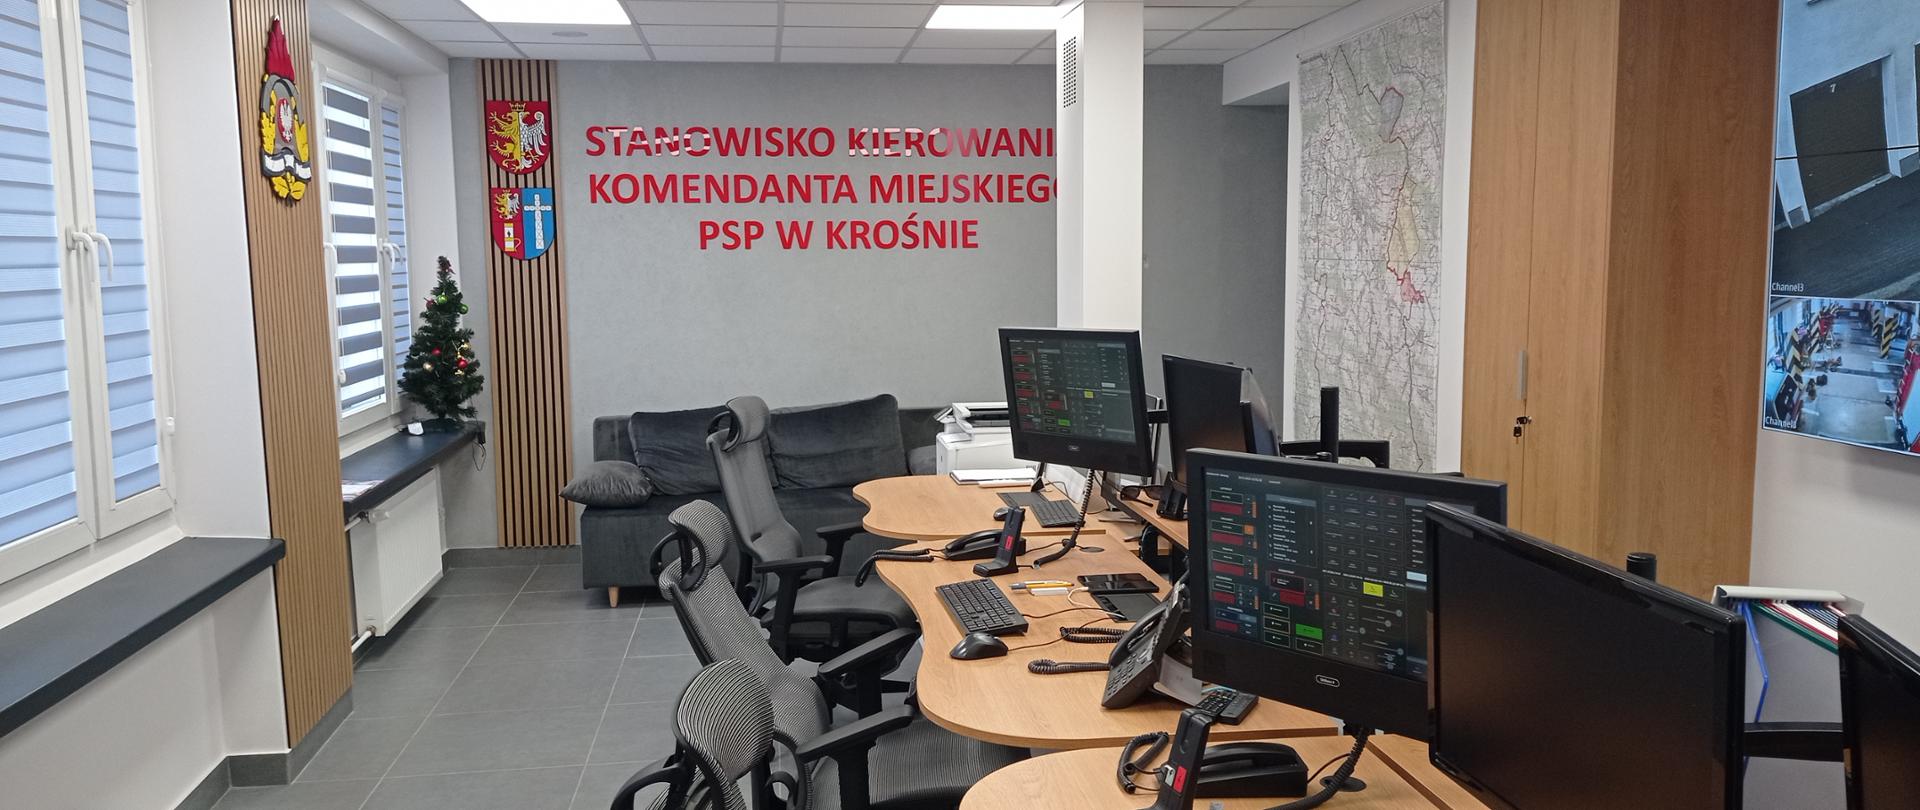 Zdjęcie przedstawia pomieszczenie stanowiska kierowania Komendanta Miejskiego PSP w Krośnie. W centrum zdjęcia znajdują się trzy stanowiska pracy dyspozytorów. Każde stanowisko wyposażone jest w fotel, dwa monitory oraz niezbędny sprzęt do alarmowania strażaków państwowej i ochotniczej straży pożarnej. 